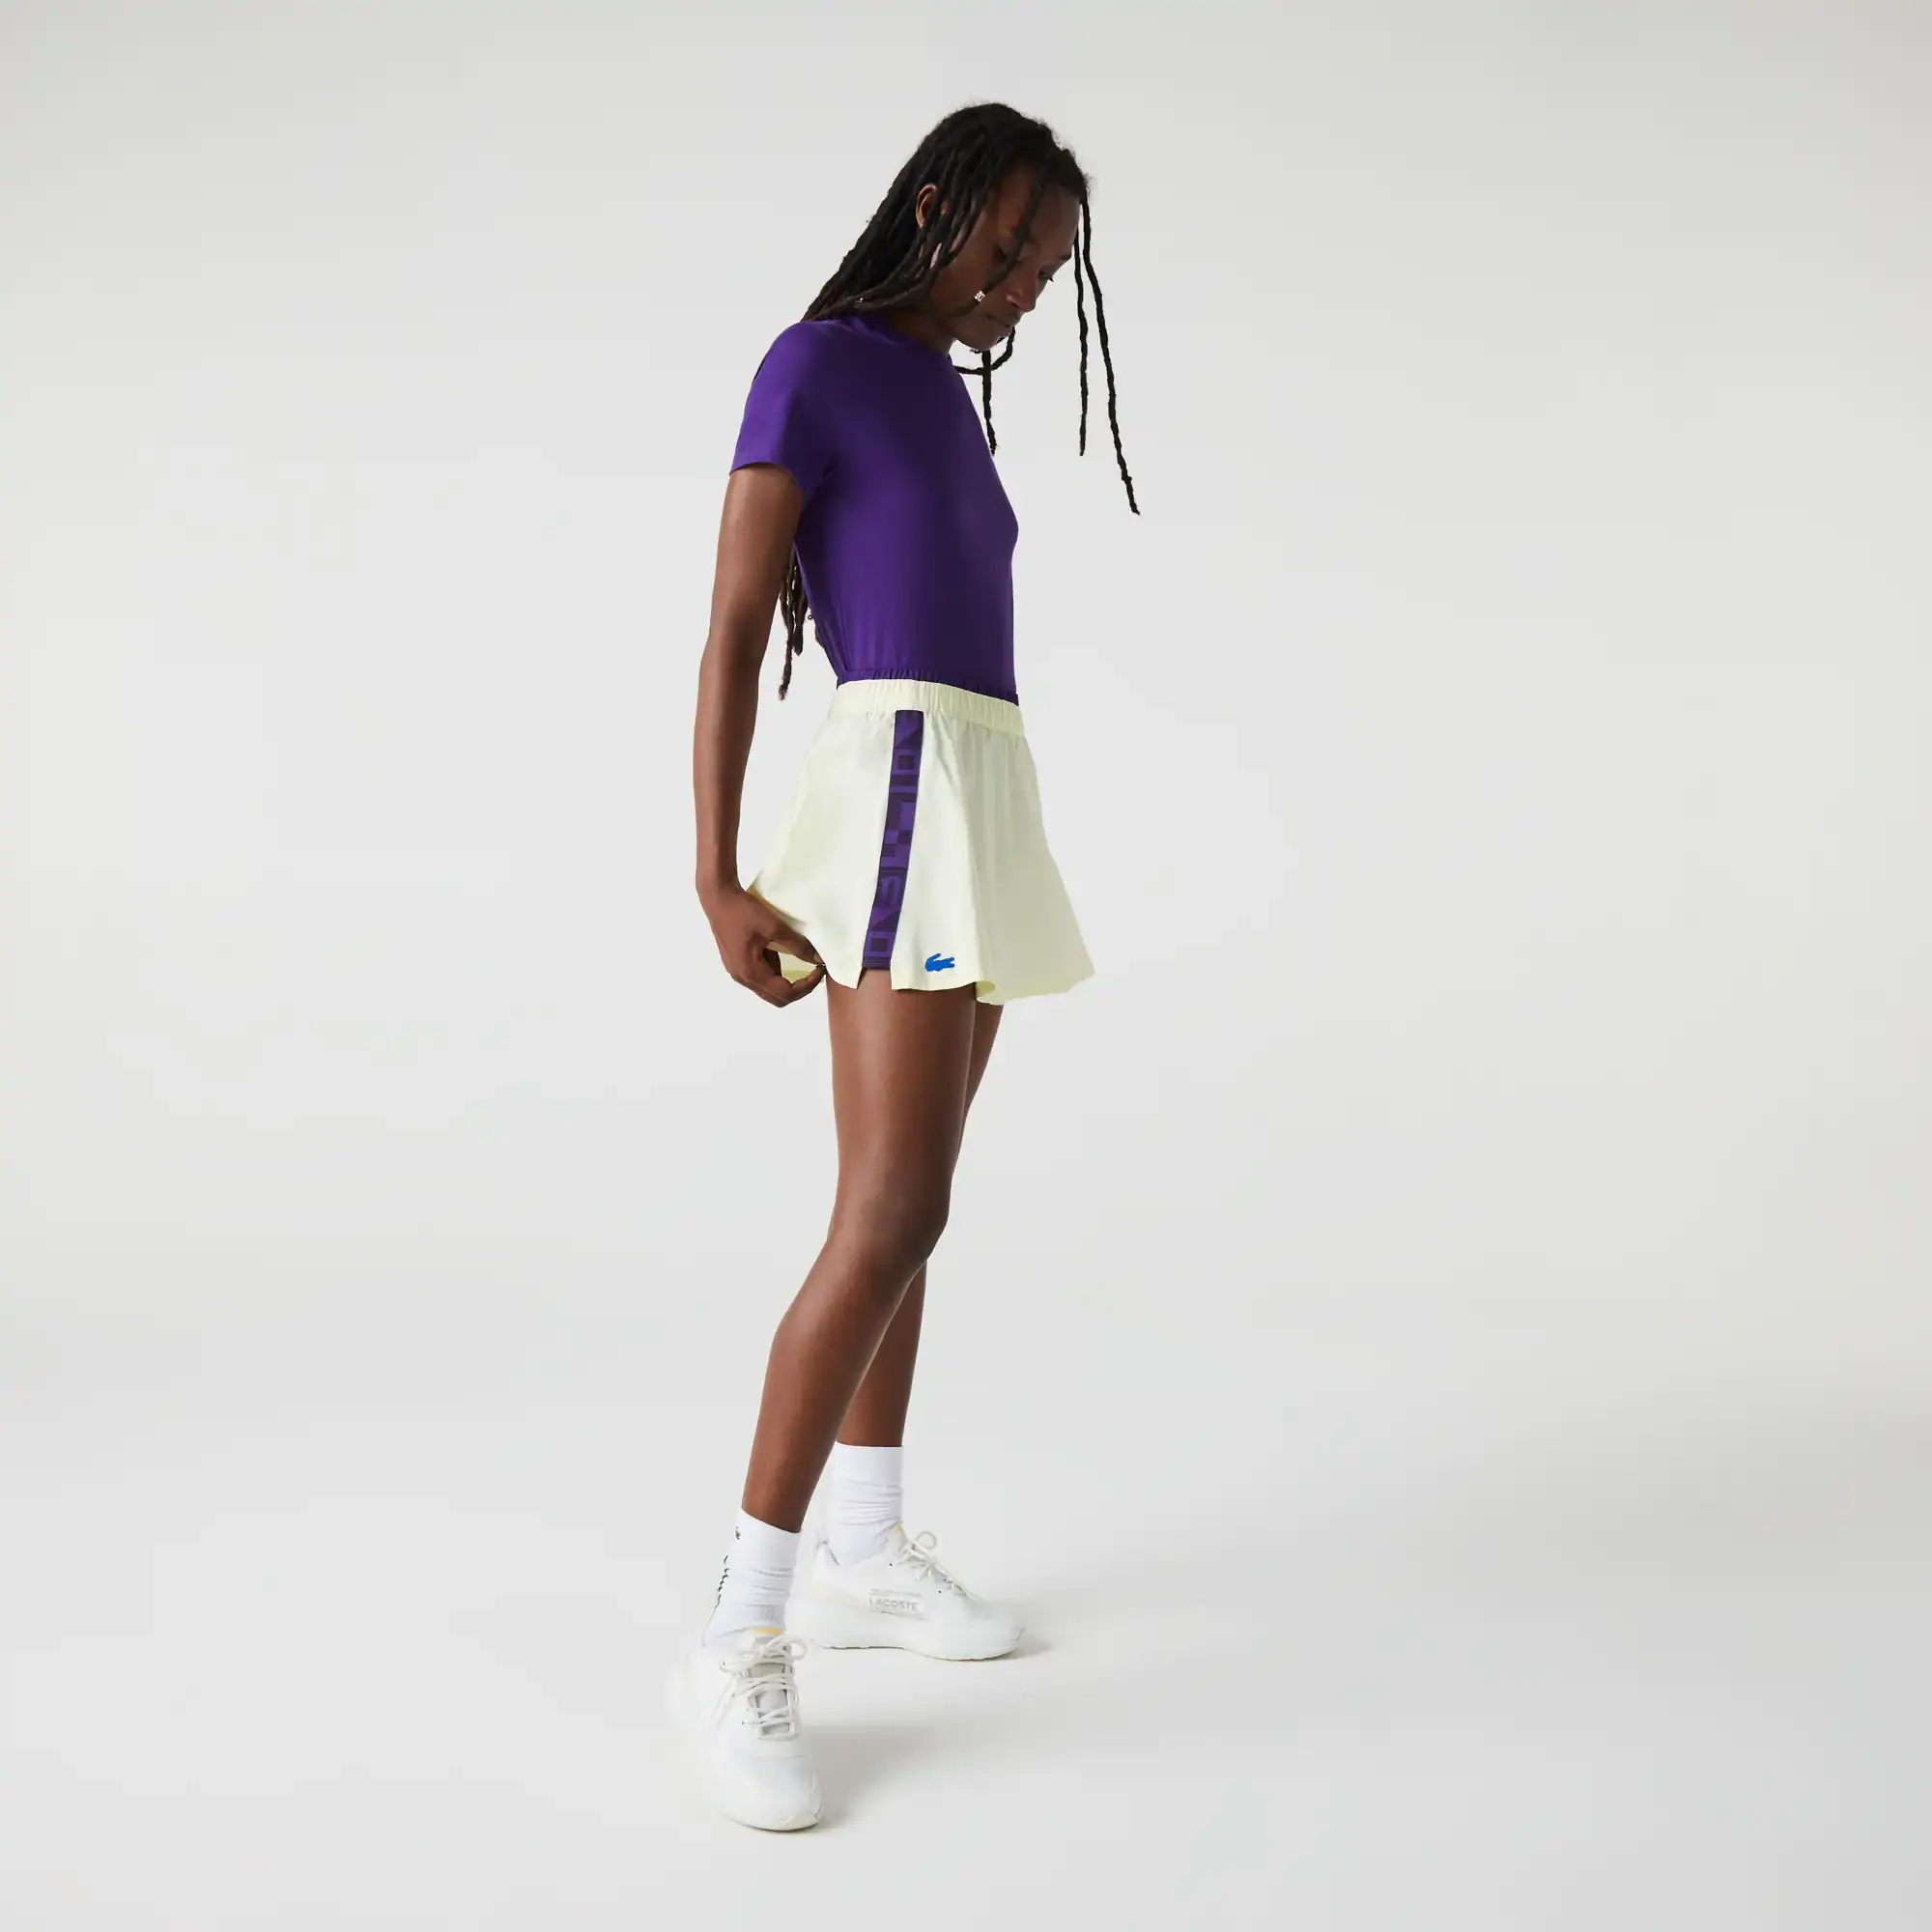 Lacoste Women's SPORT Built-In Short Tennis Skirt. 1